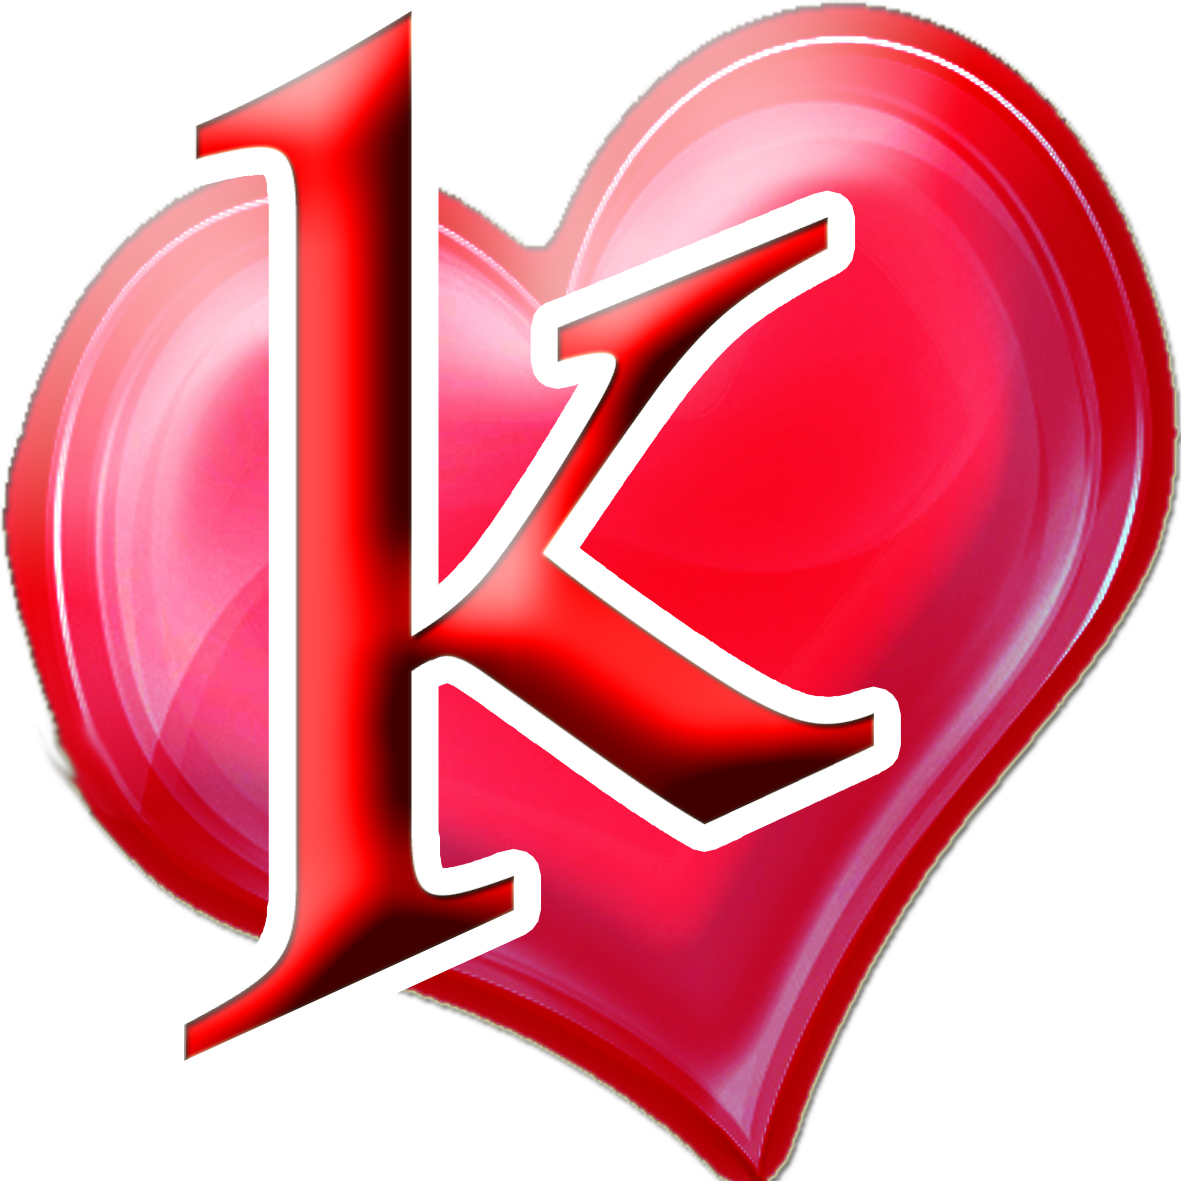 اجمل الصور لحرف k حرف K بالانجليزية رهيبه